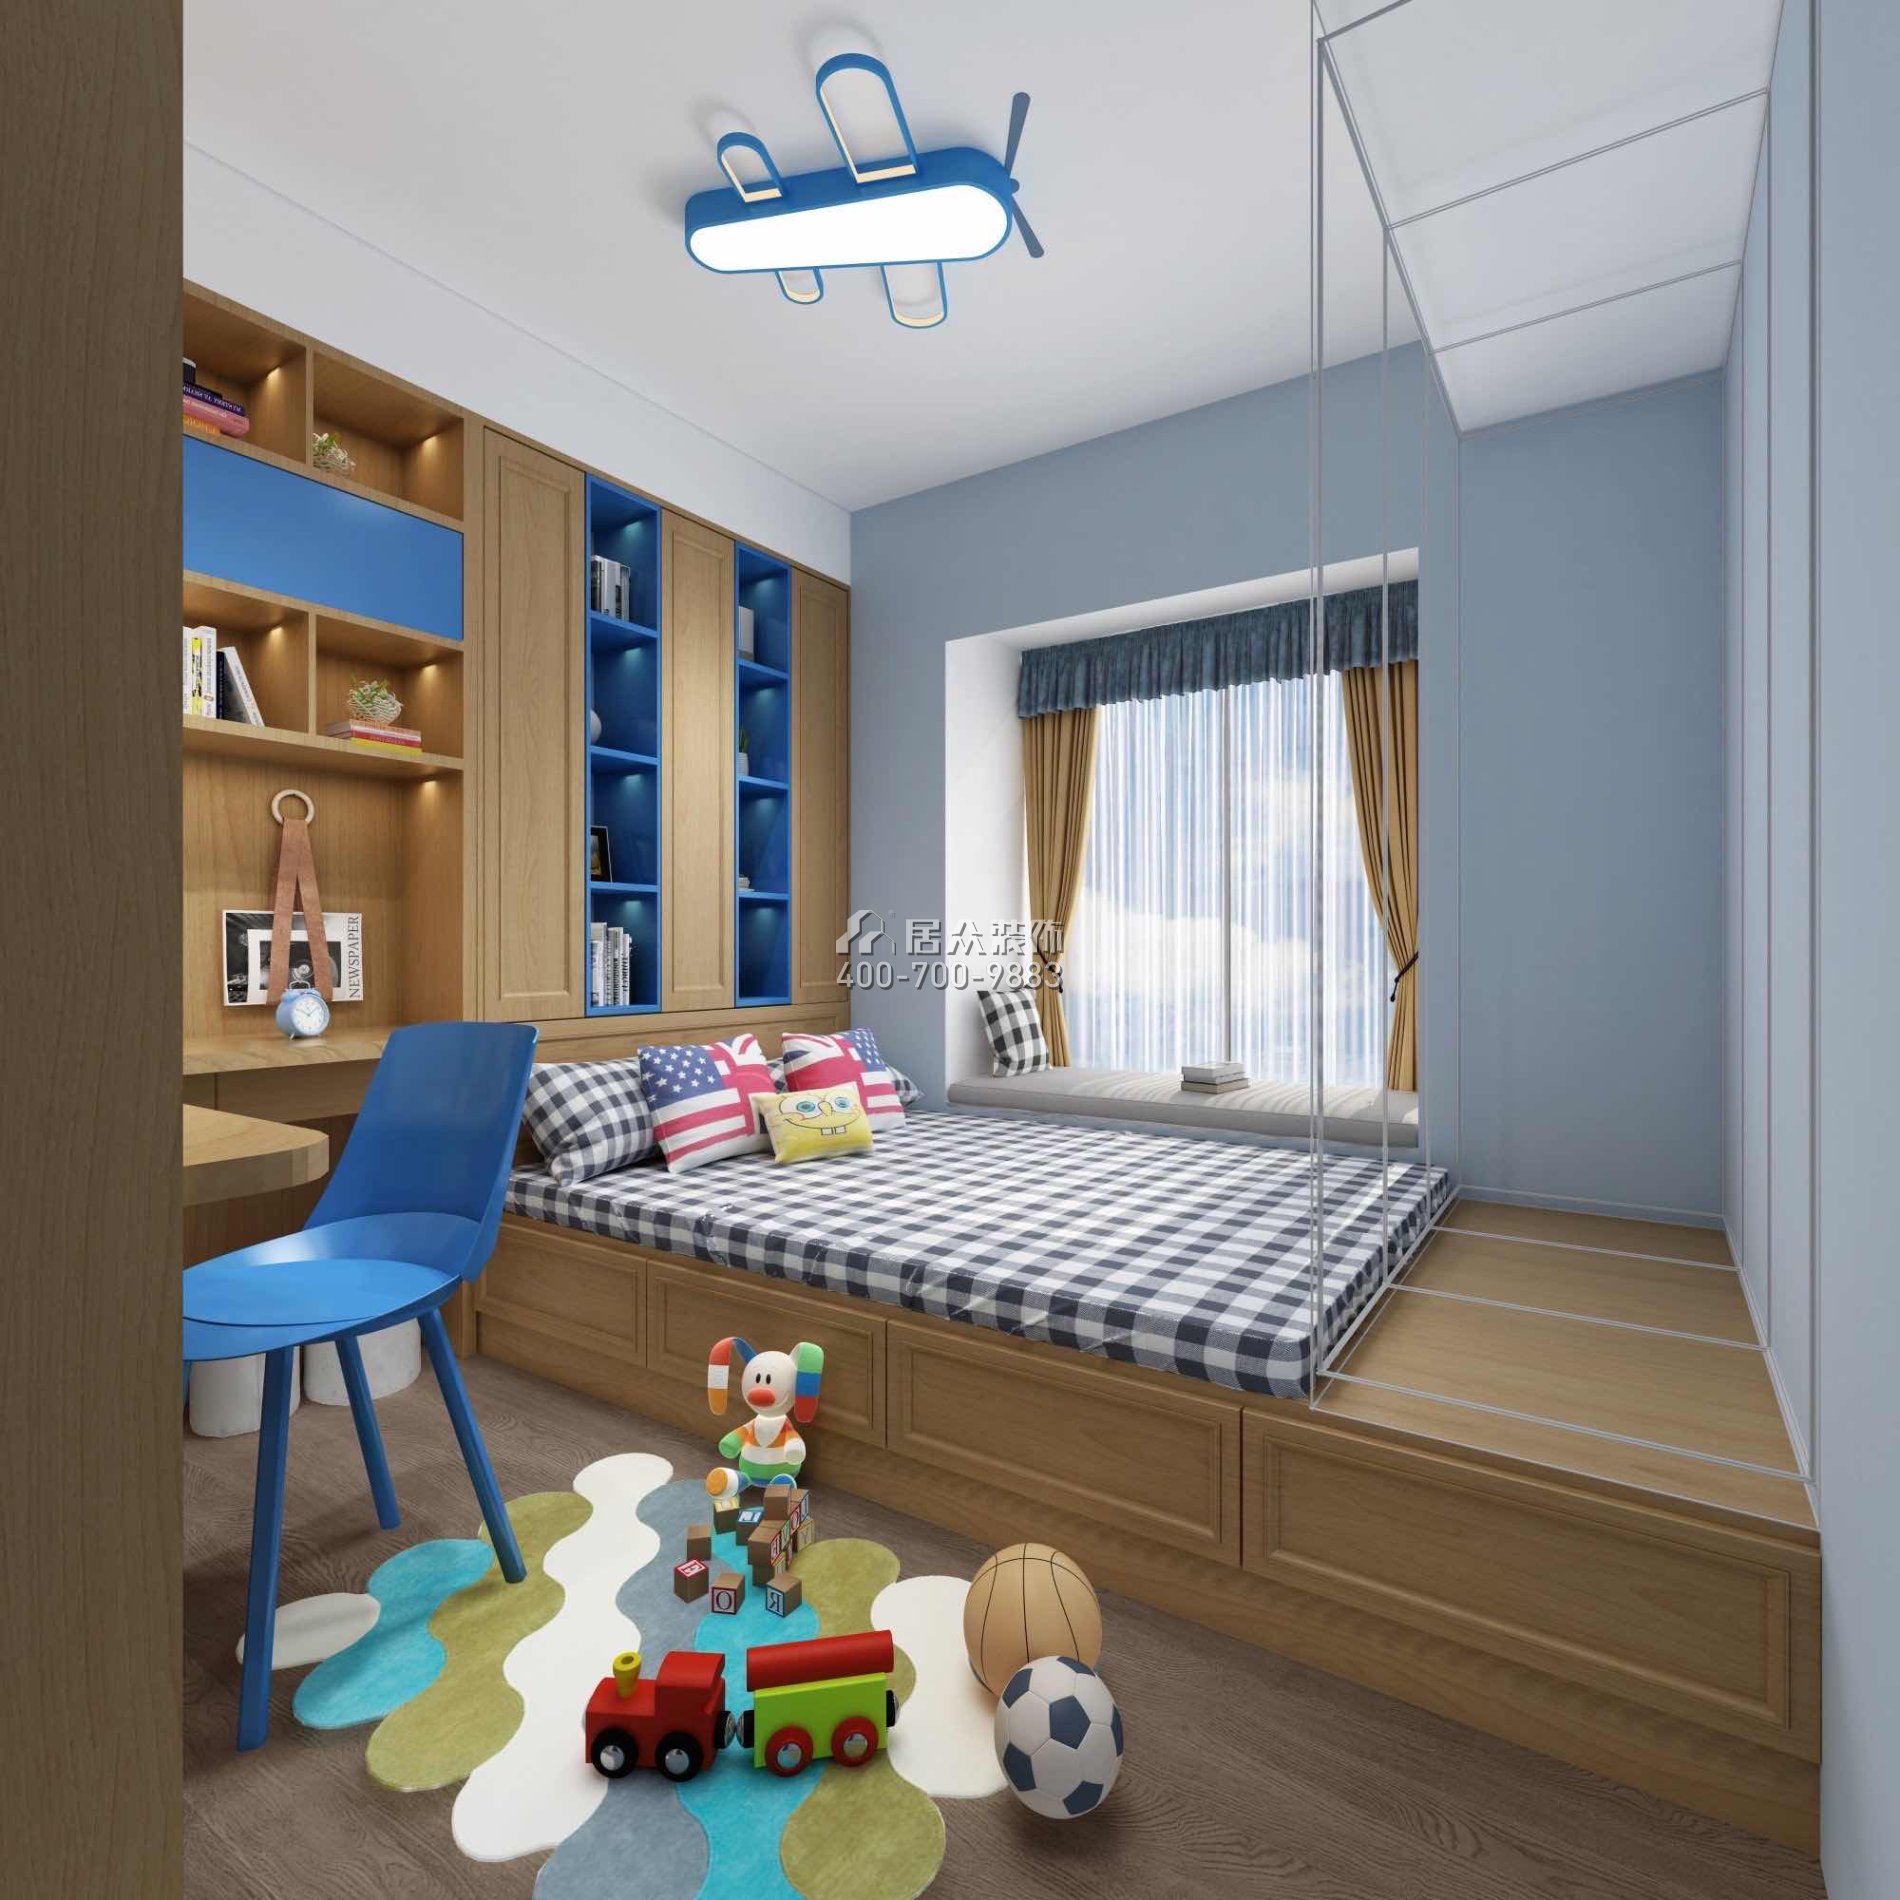 尚東領御216平方米現代簡約風格平層戶型兒童房裝修效果圖